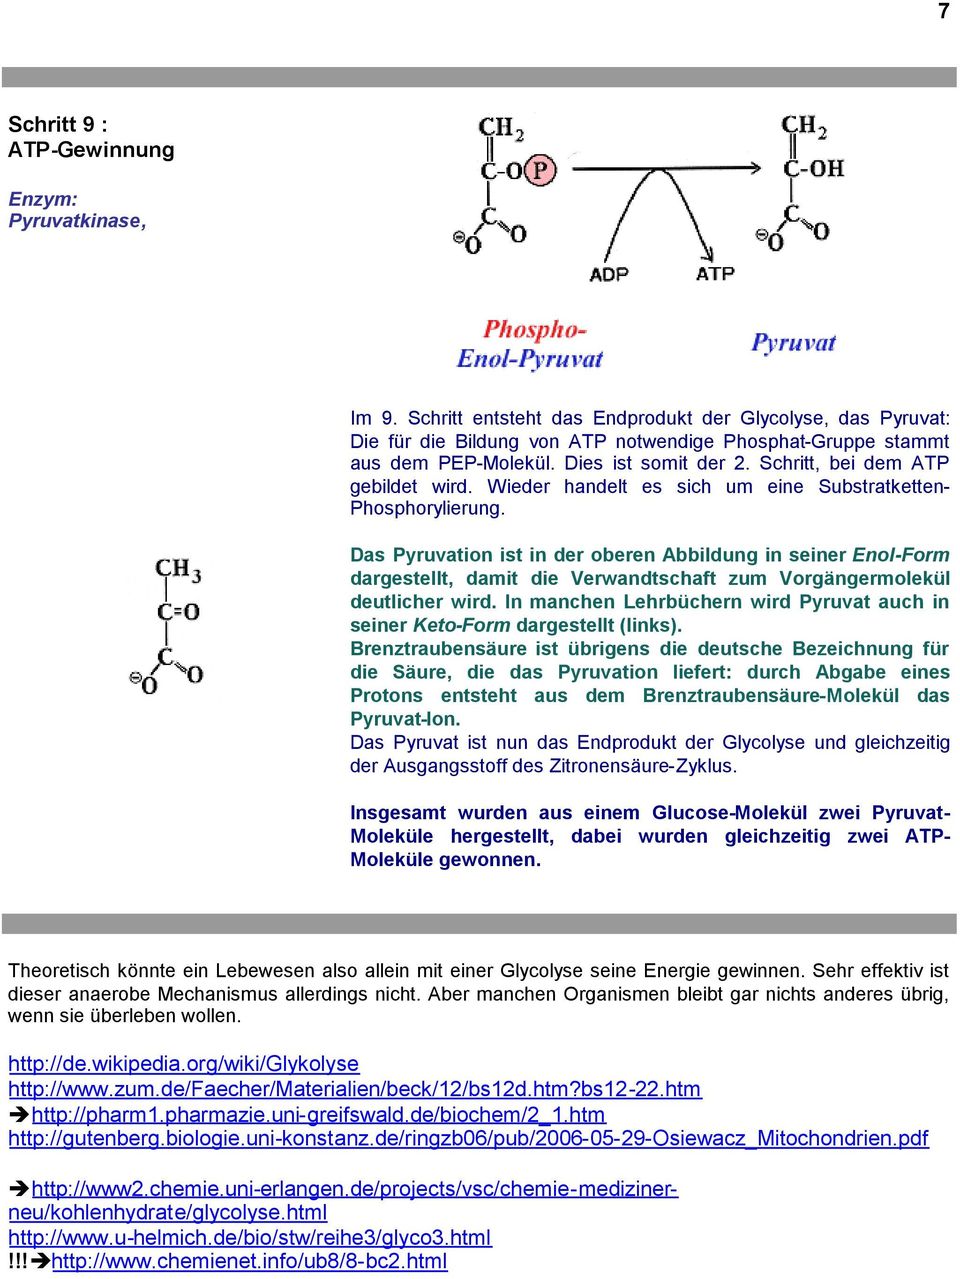 Das Pyruvation ist in der oberen Abbildung in seiner Enol-Form dargestellt, damit die Verwandtschaft zum Vorgängermolekül deutlicher wird.